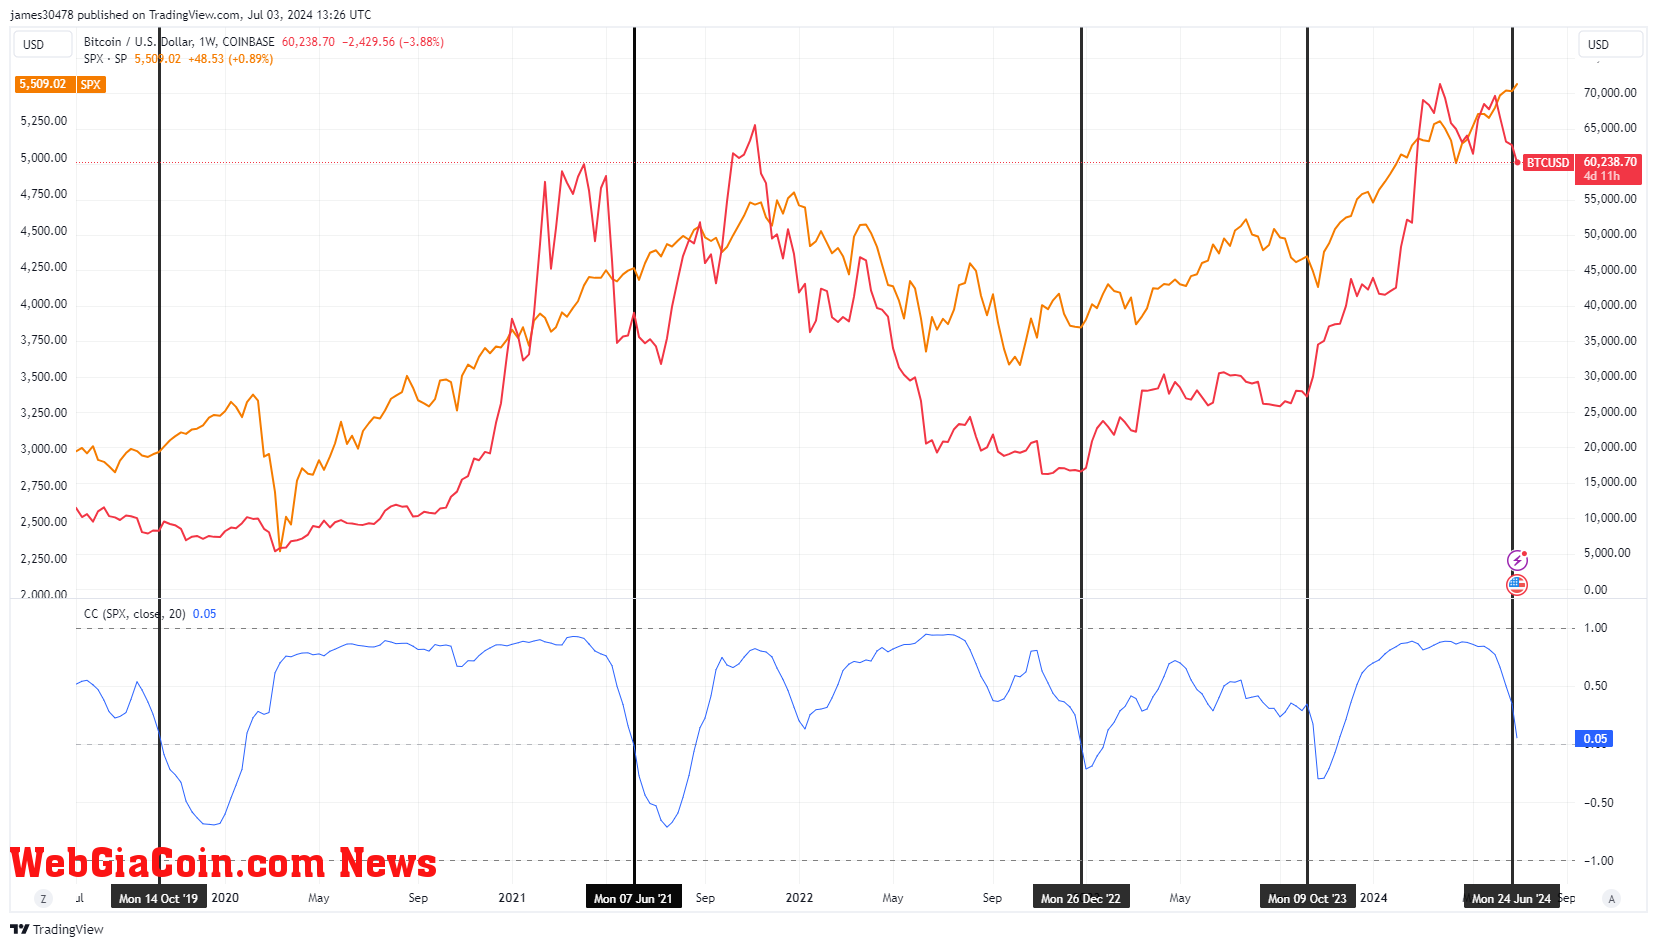 BTCUSD vs SPX Correlation: (Source: TradingView)